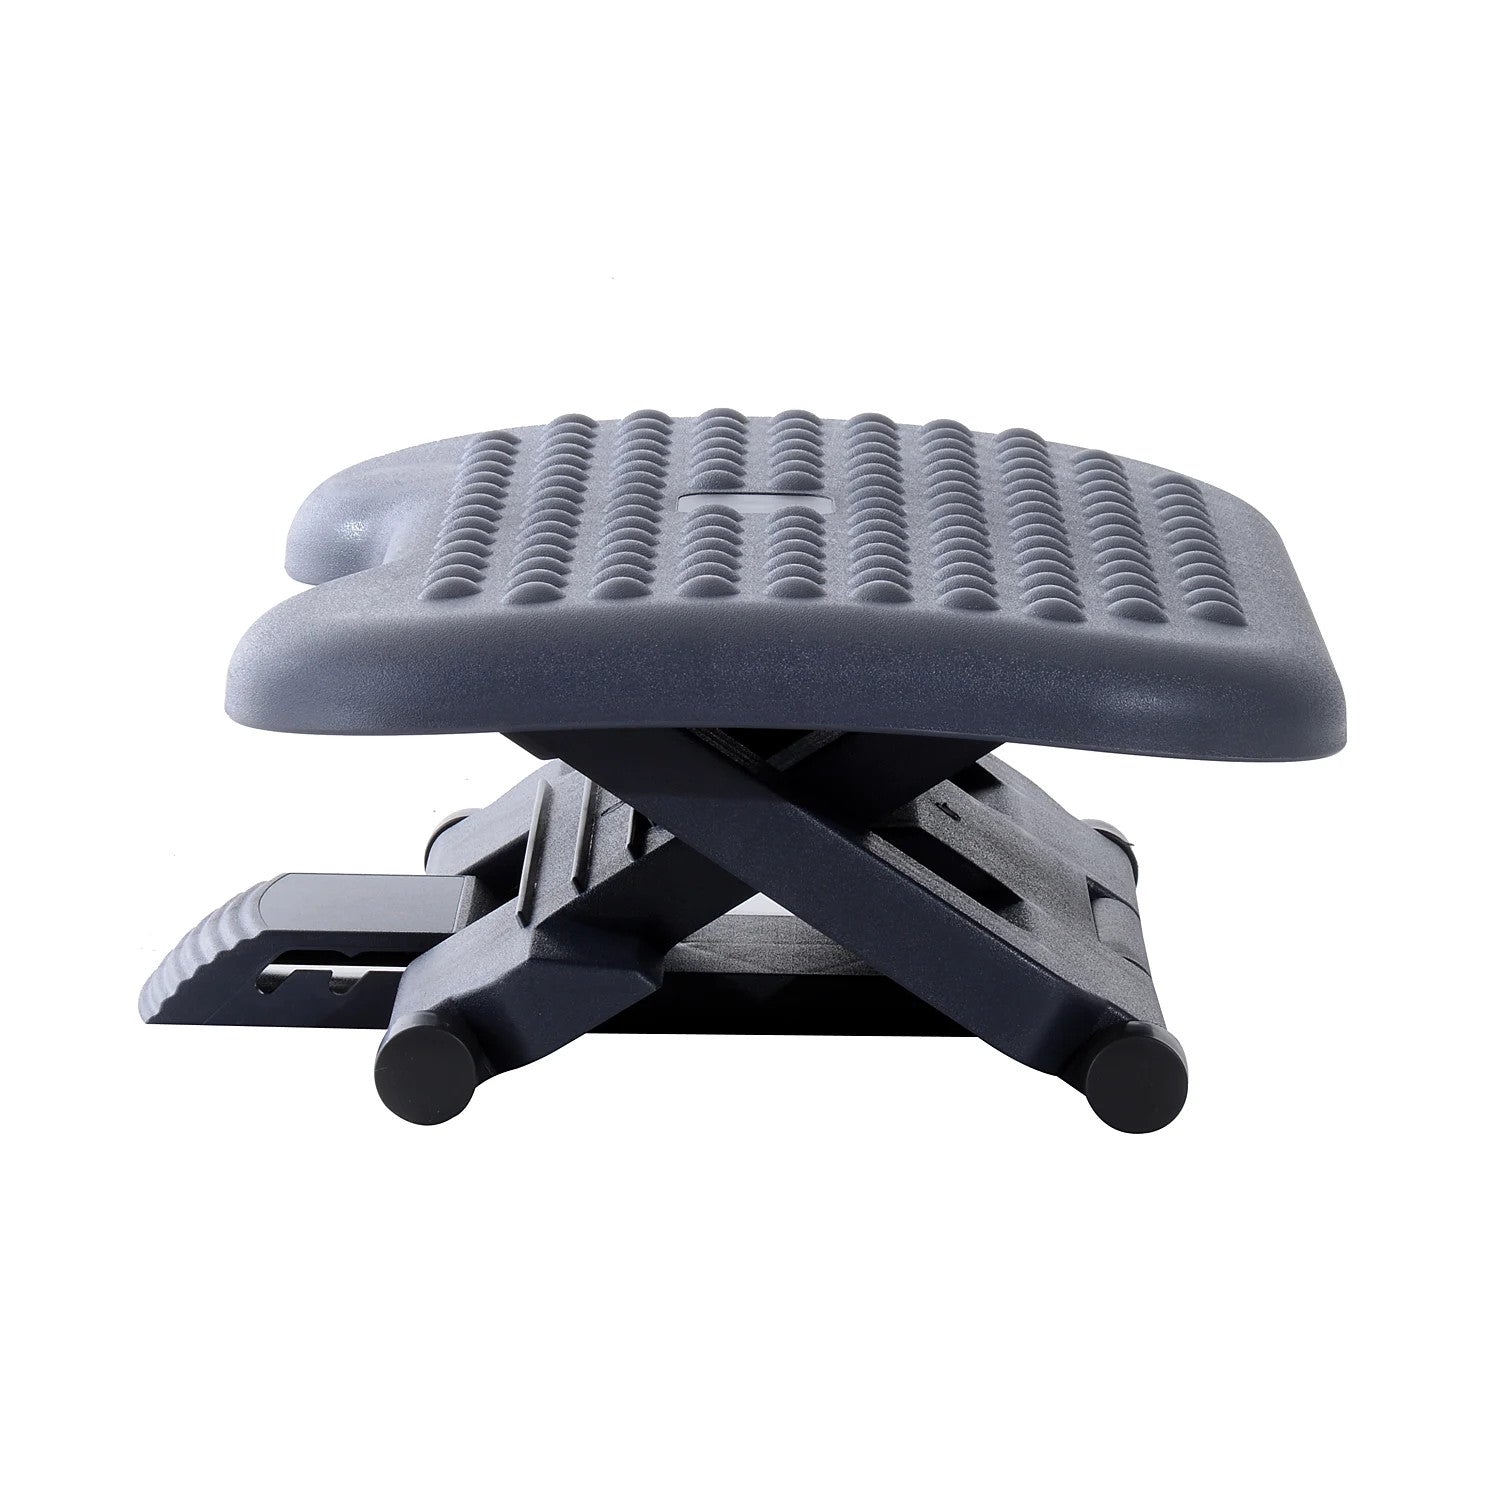 ProperAV Home Under Desk Height & Angle Adjustable Footrest - Grey Black